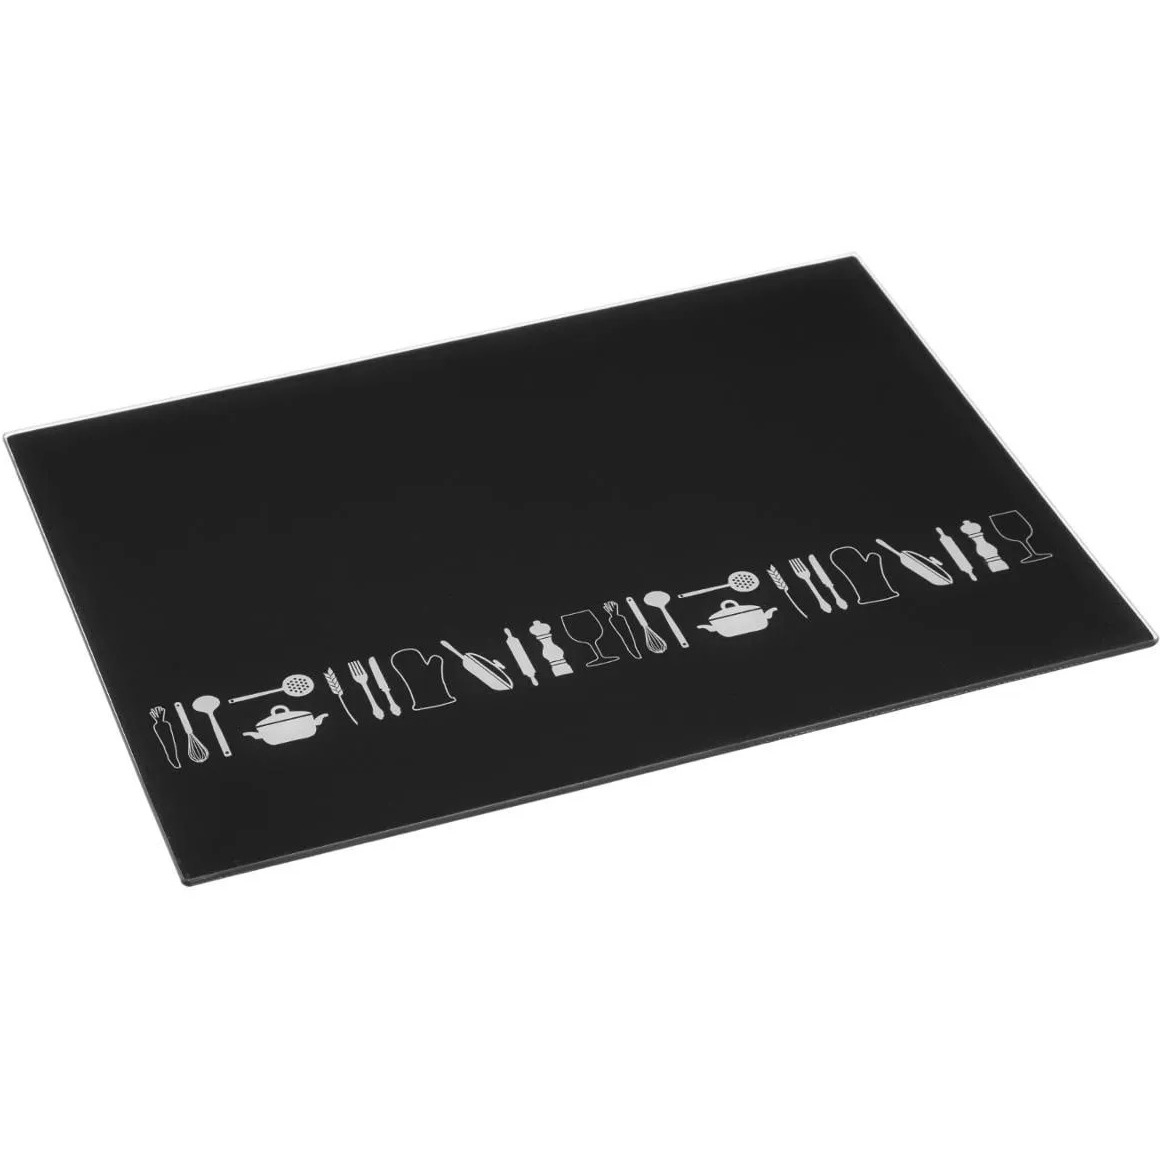 Snijplank rechthoek zwart met print 40 x 30 cm van glas